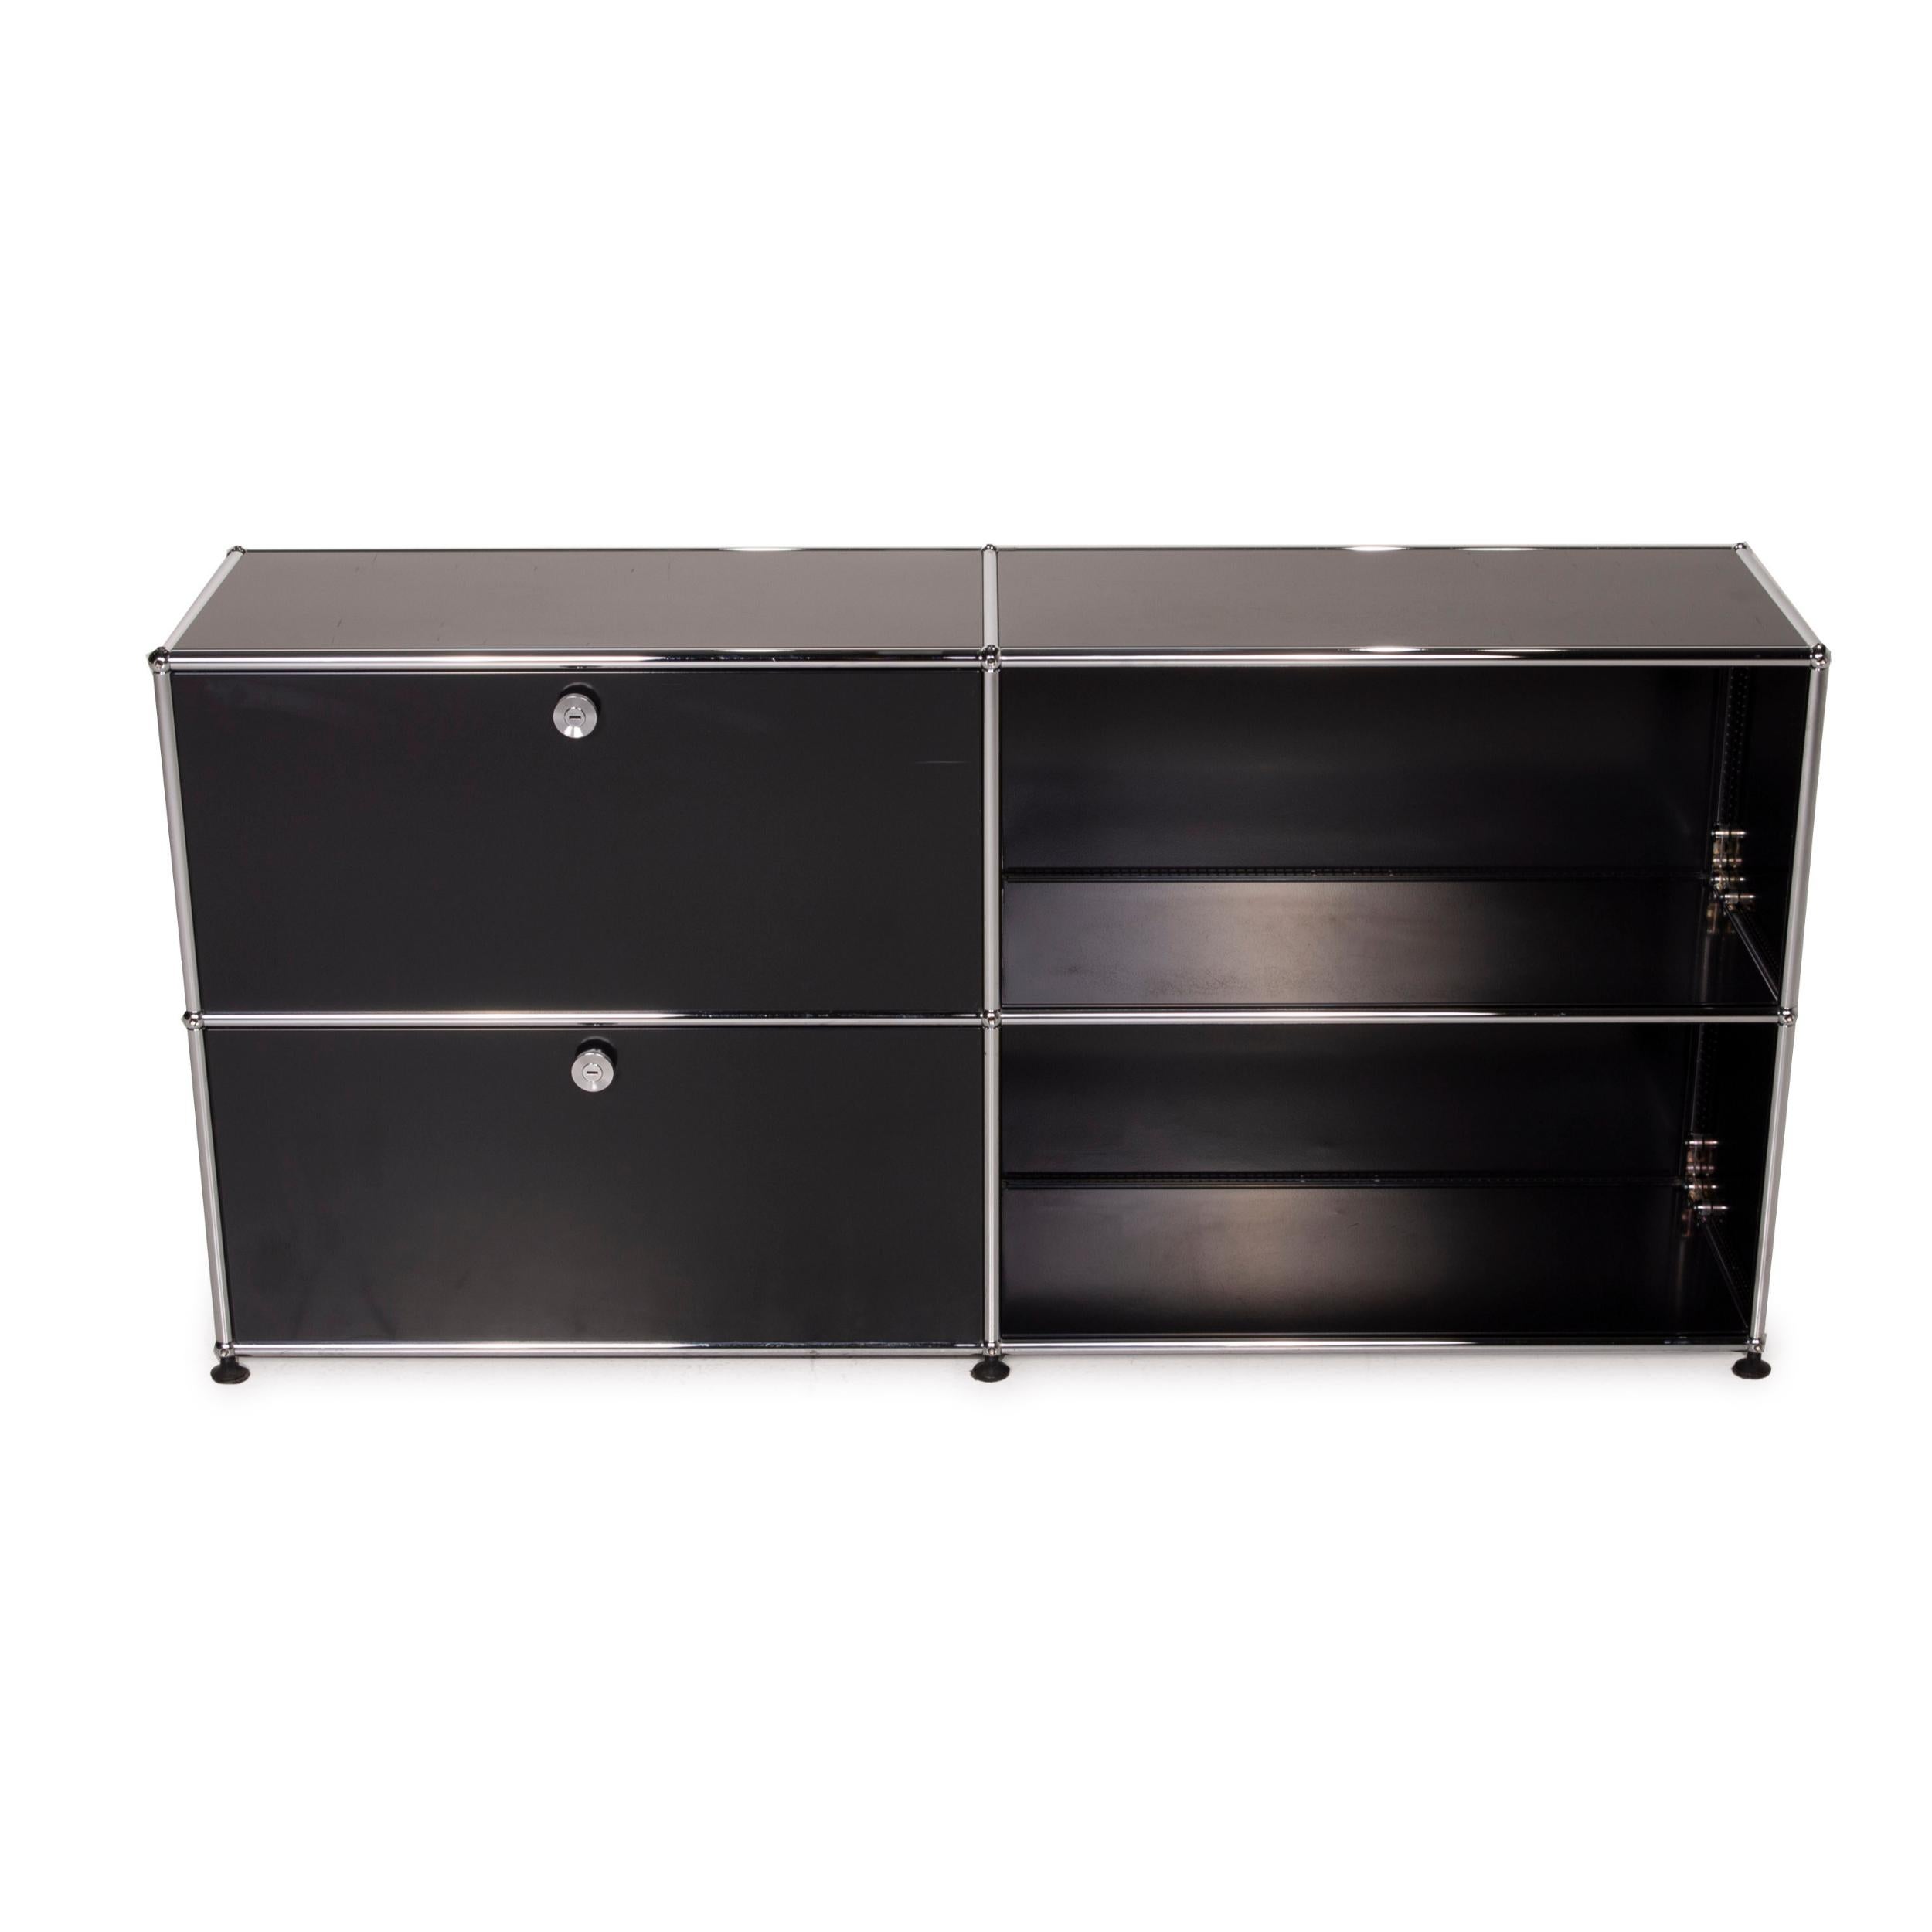 USM Haller Metal Sideboard Black Highboard Drawer Shelf Compartment Office 2